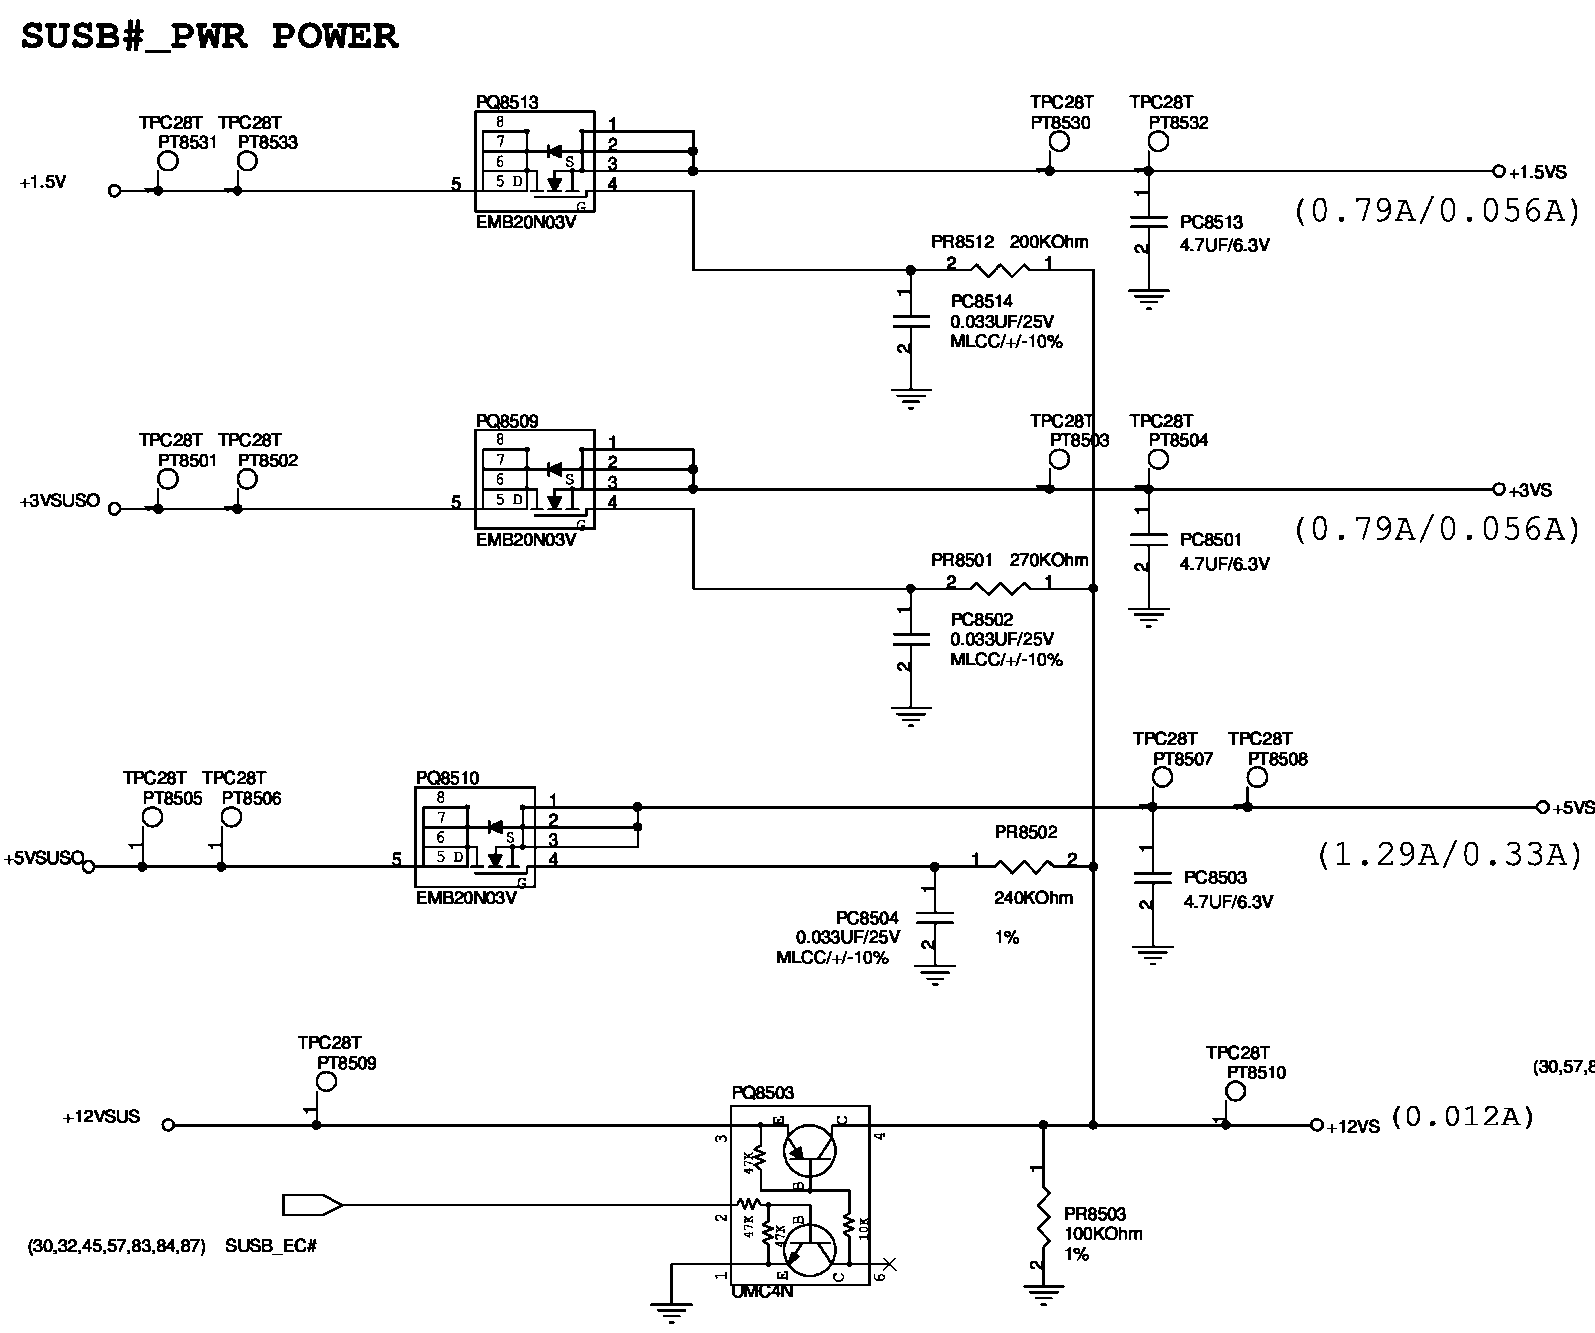 5VS电压送给UP7711(PU9103)，控制产生0.75VS